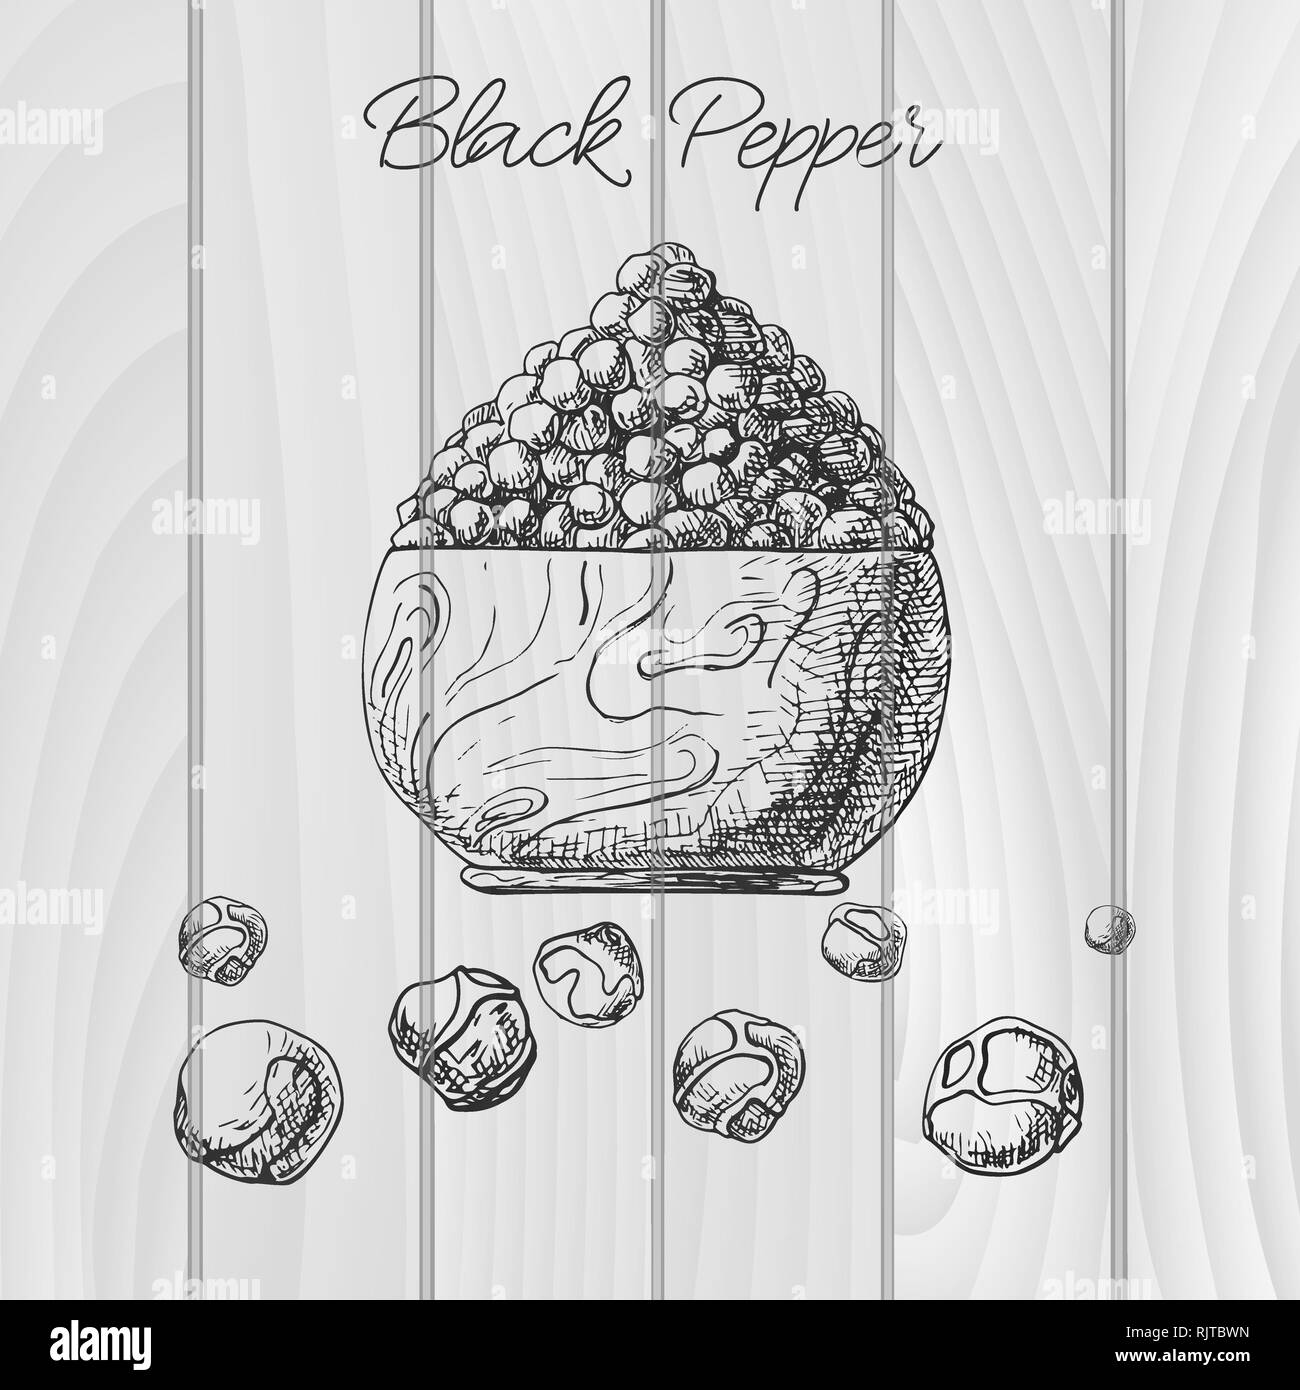 Körner schwarzen Pfeffer in eine hölzerne Schüssel. Hand Pfeffer schwarz gezeichnet. Vector Illustration einer Skizze Stil. Stock Vektor